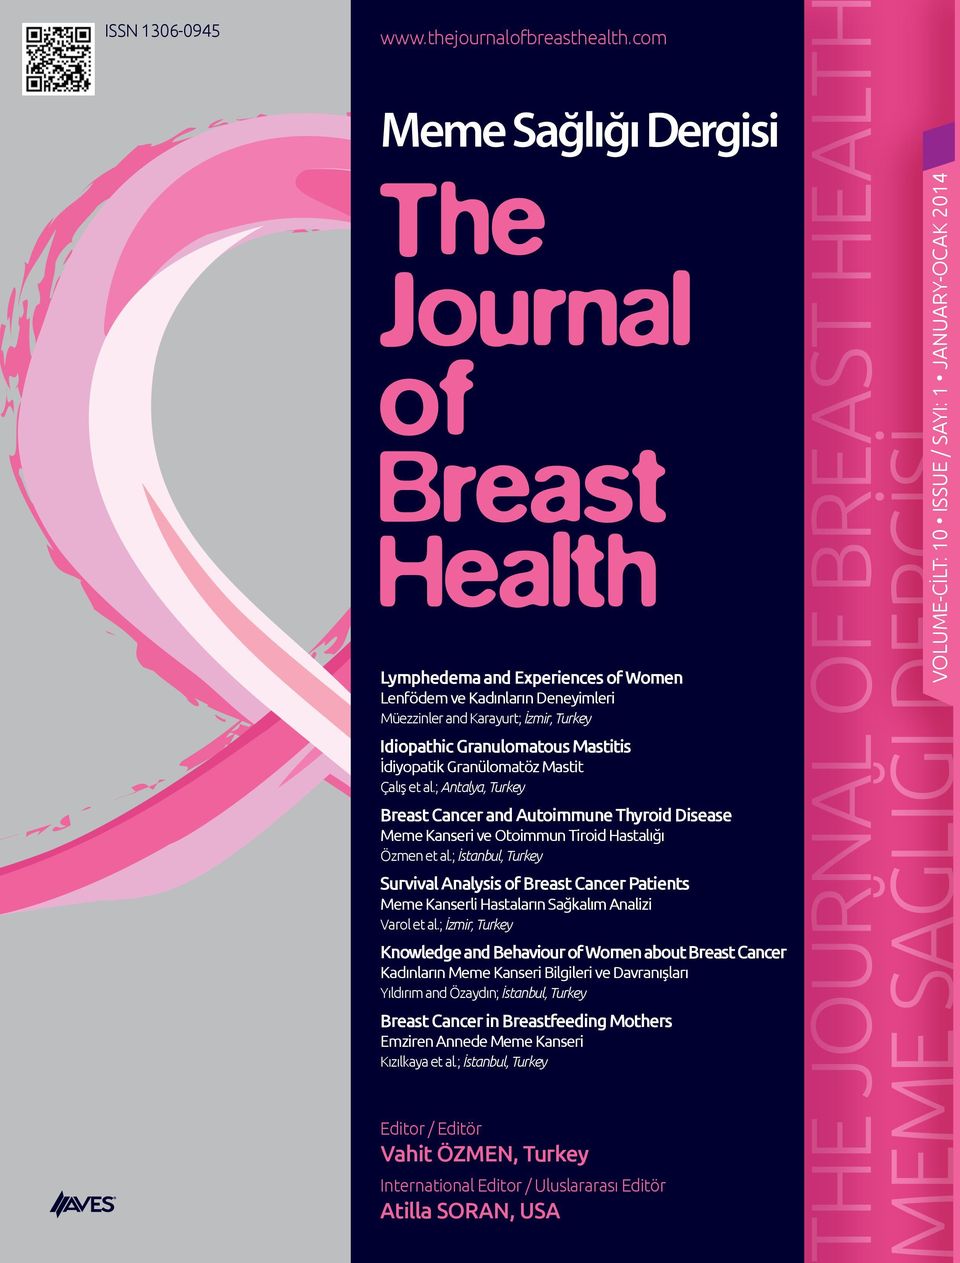 Çalış et al.; Antalya, Turkey Breast Cancer and Autoimmune Thyroid Disease Meme Kanseri ve Otoimmun Tiroid Hastalığı Özmen et al.